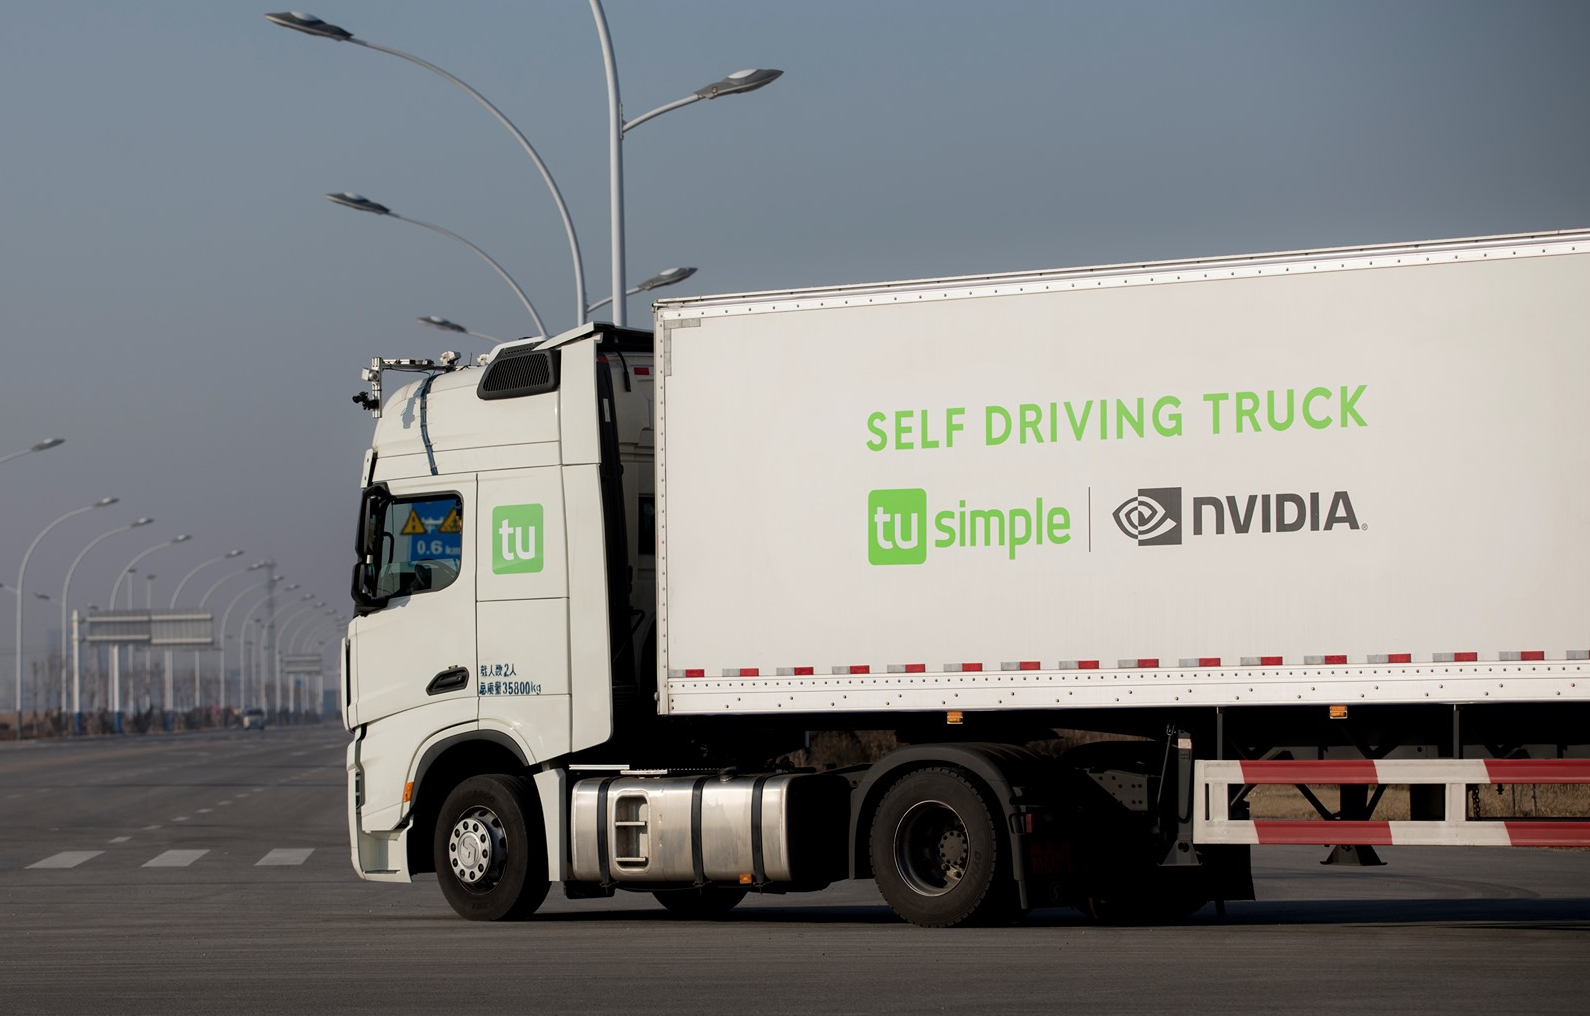 NVIDIA DRIVE Thor: Revolución en el transporte en una nueva era de vehículos inteligentes